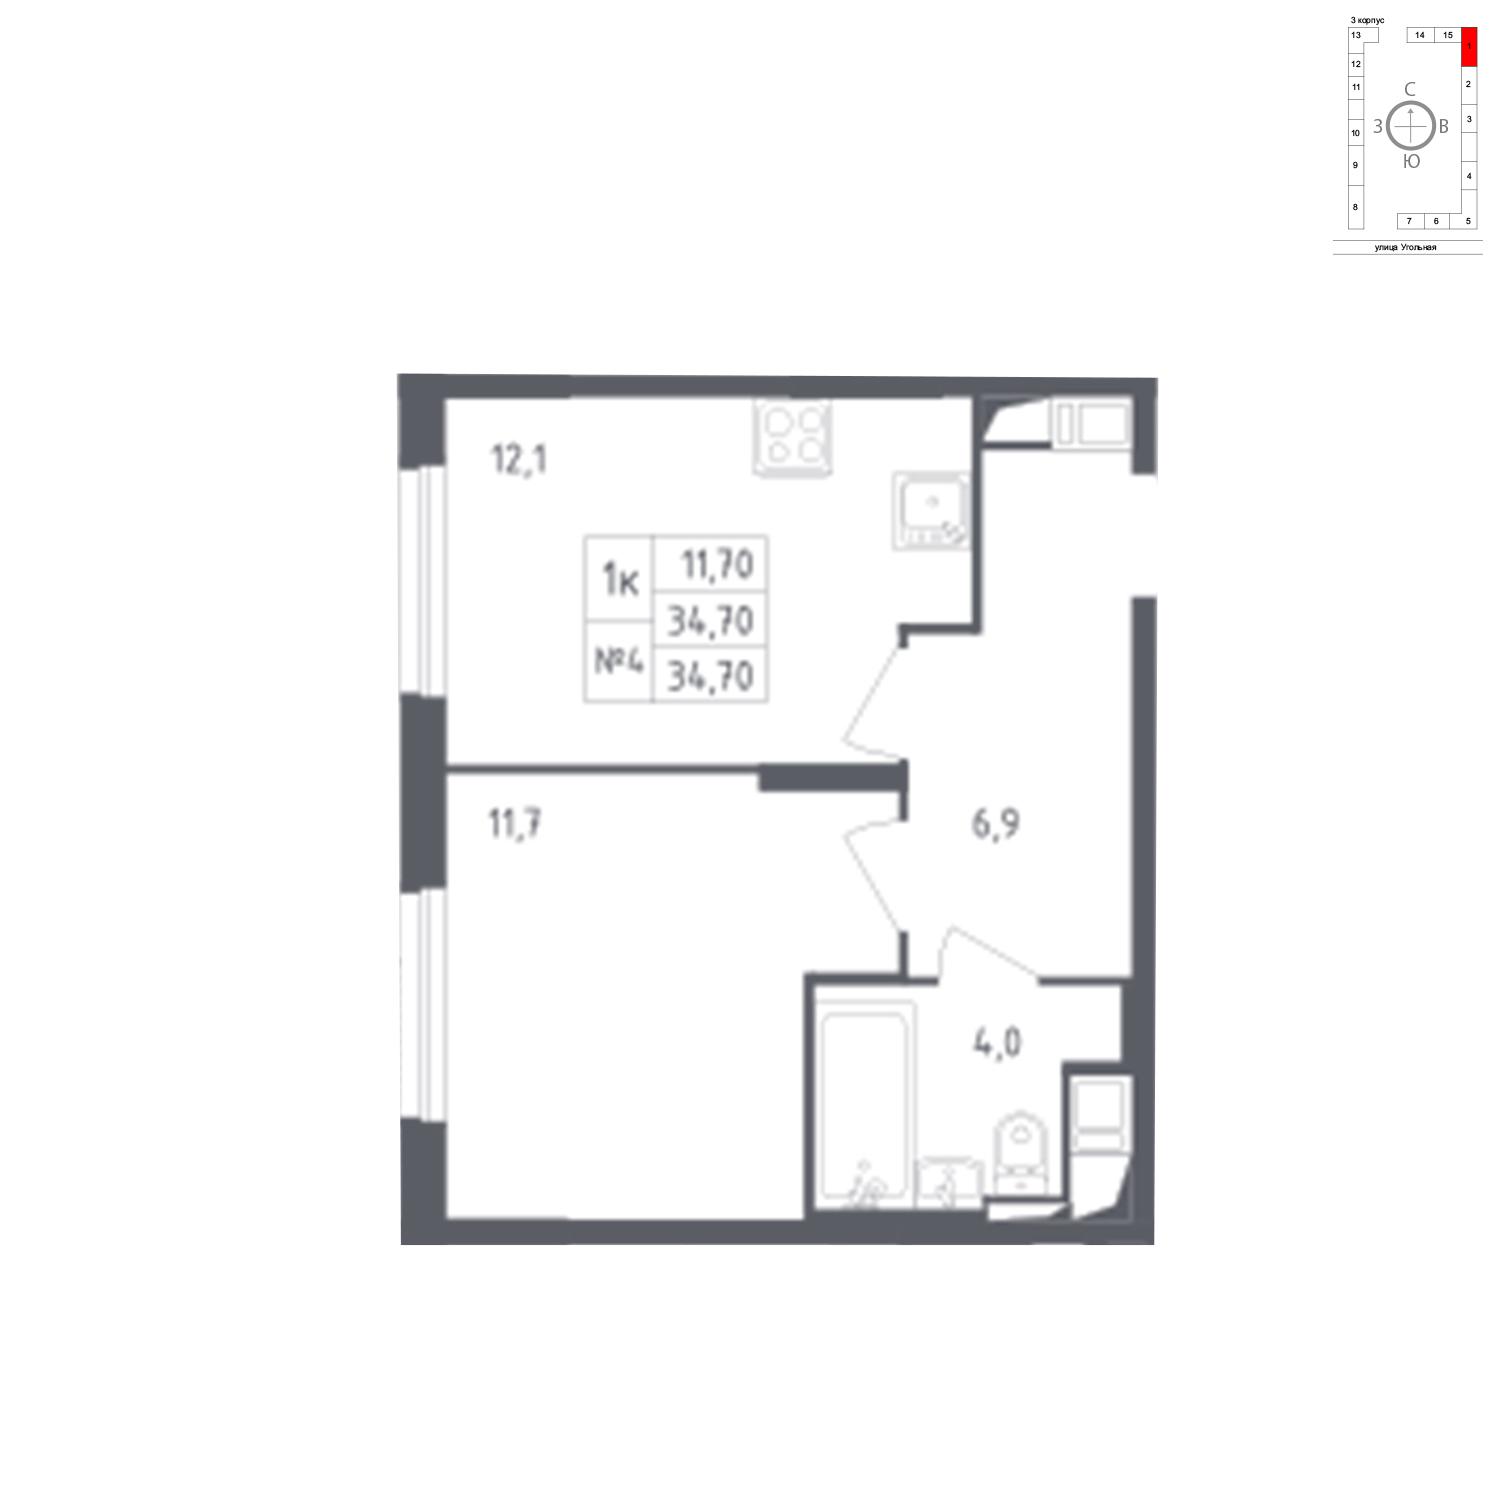 Продаётся 1-комнатная квартира в новостройке 34.7 кв.м. этаж 2/17 за 6 471 911 руб 